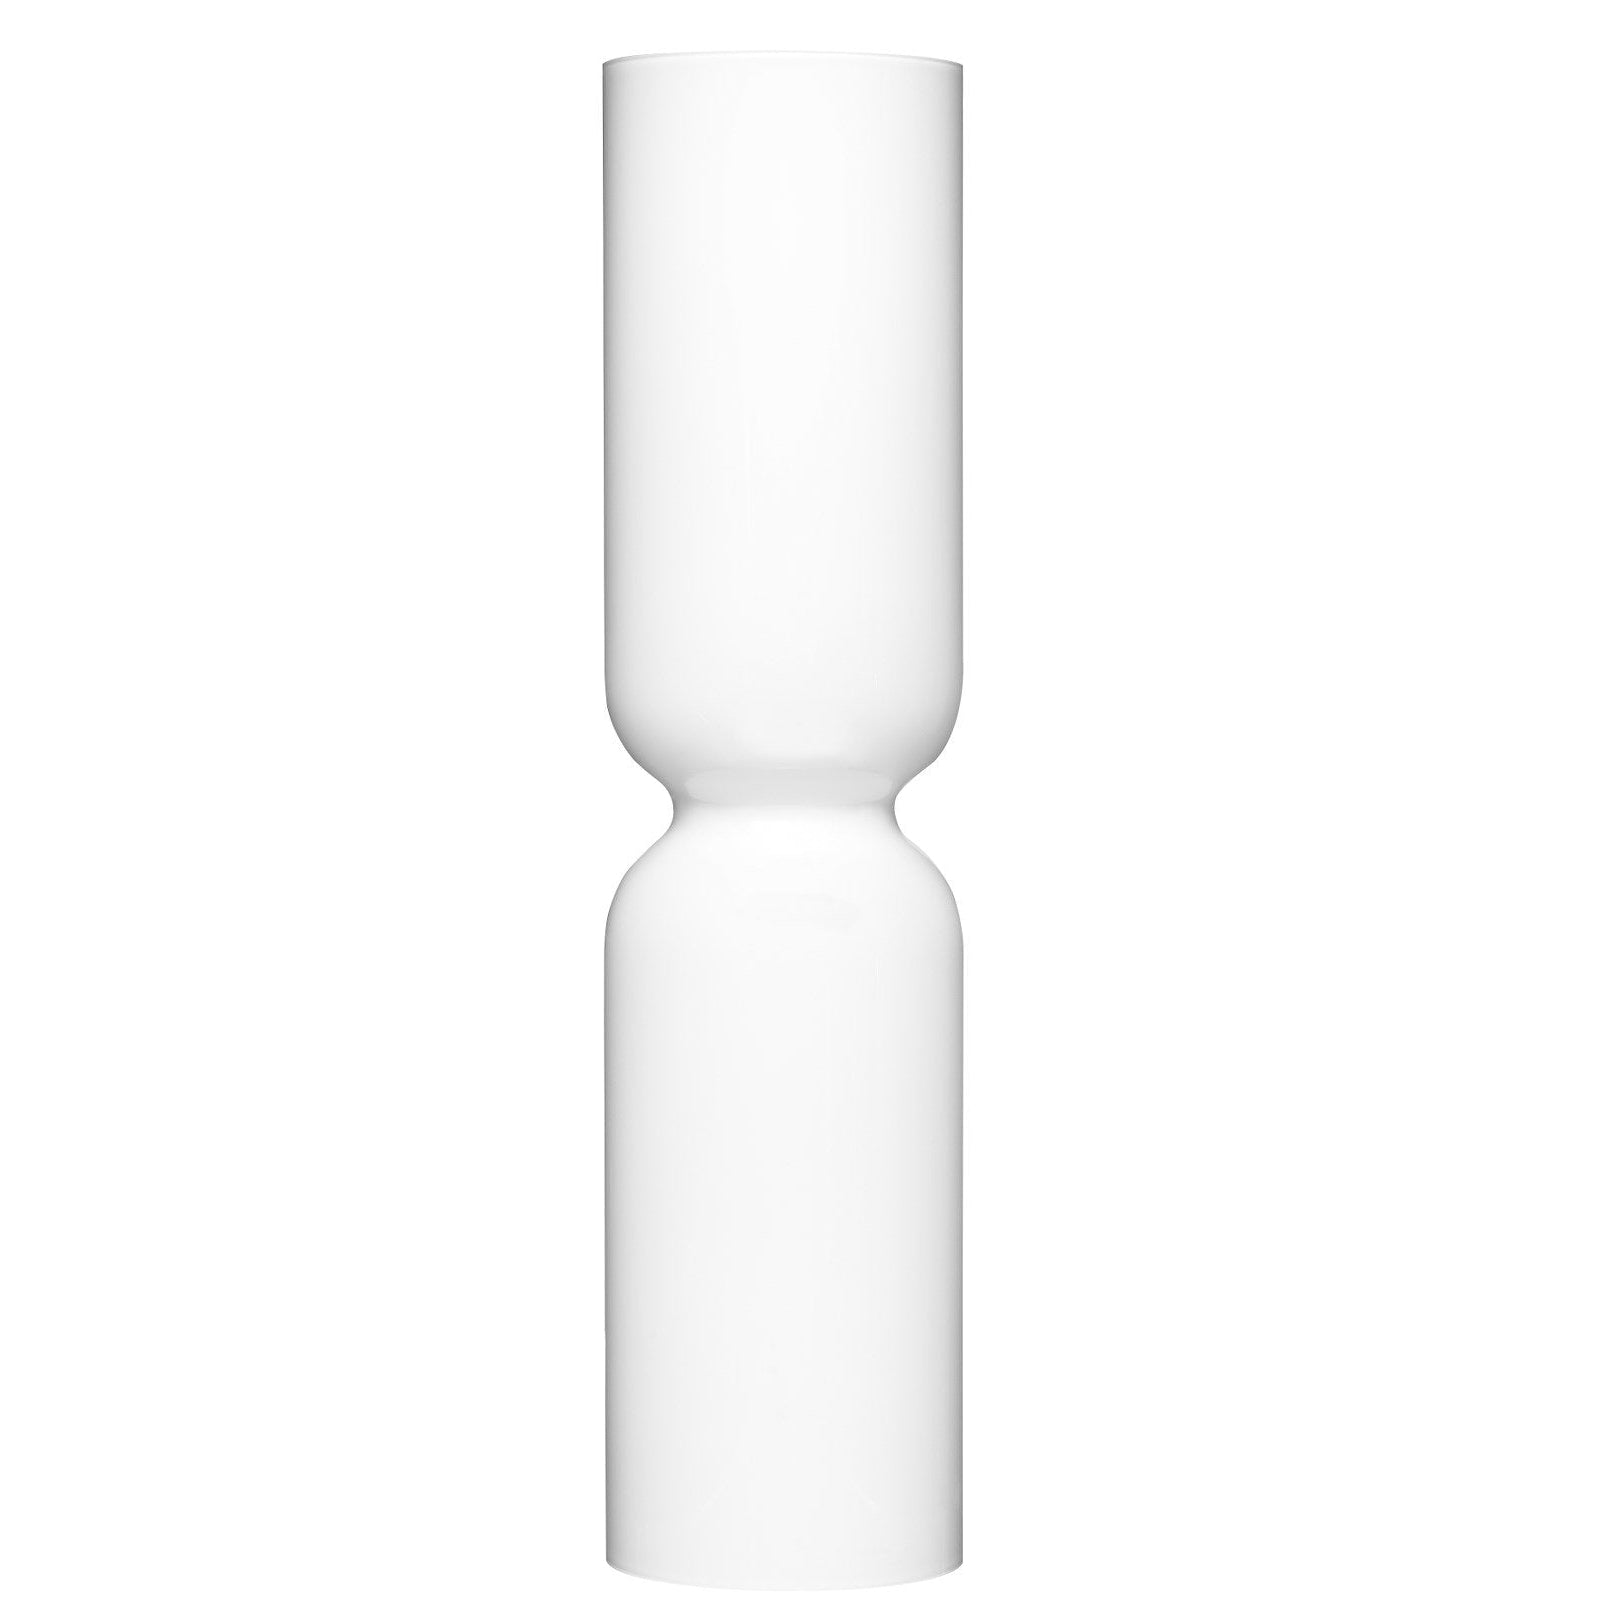 Iittala Laterne Kerzenständer Weiß, 60cm